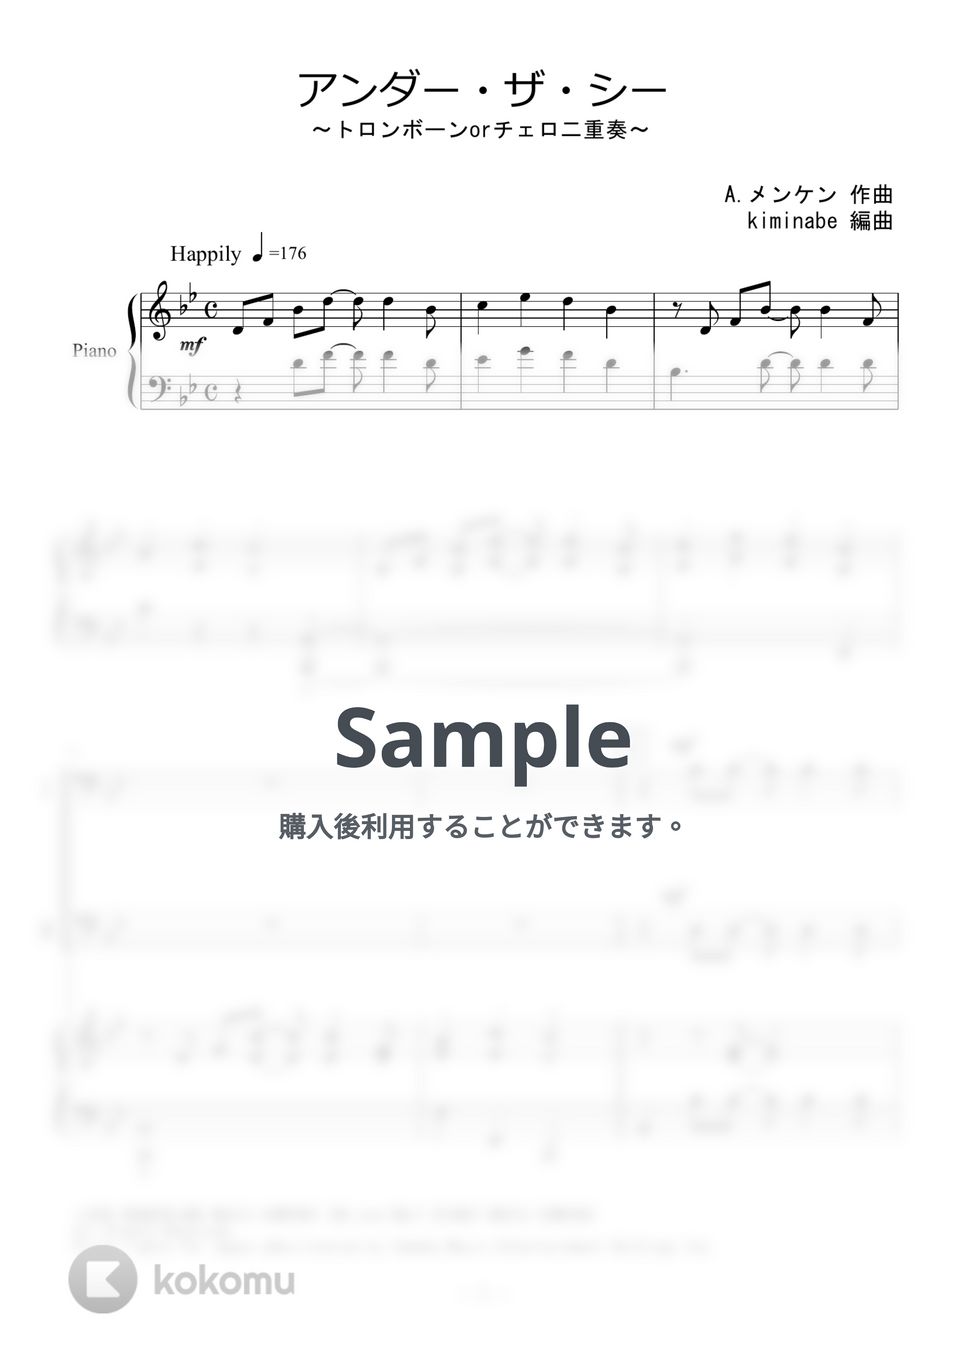 リトルマーメイド - アンダー・ザ・シー (トロンボーンorチェロ二重奏) by kiminabe